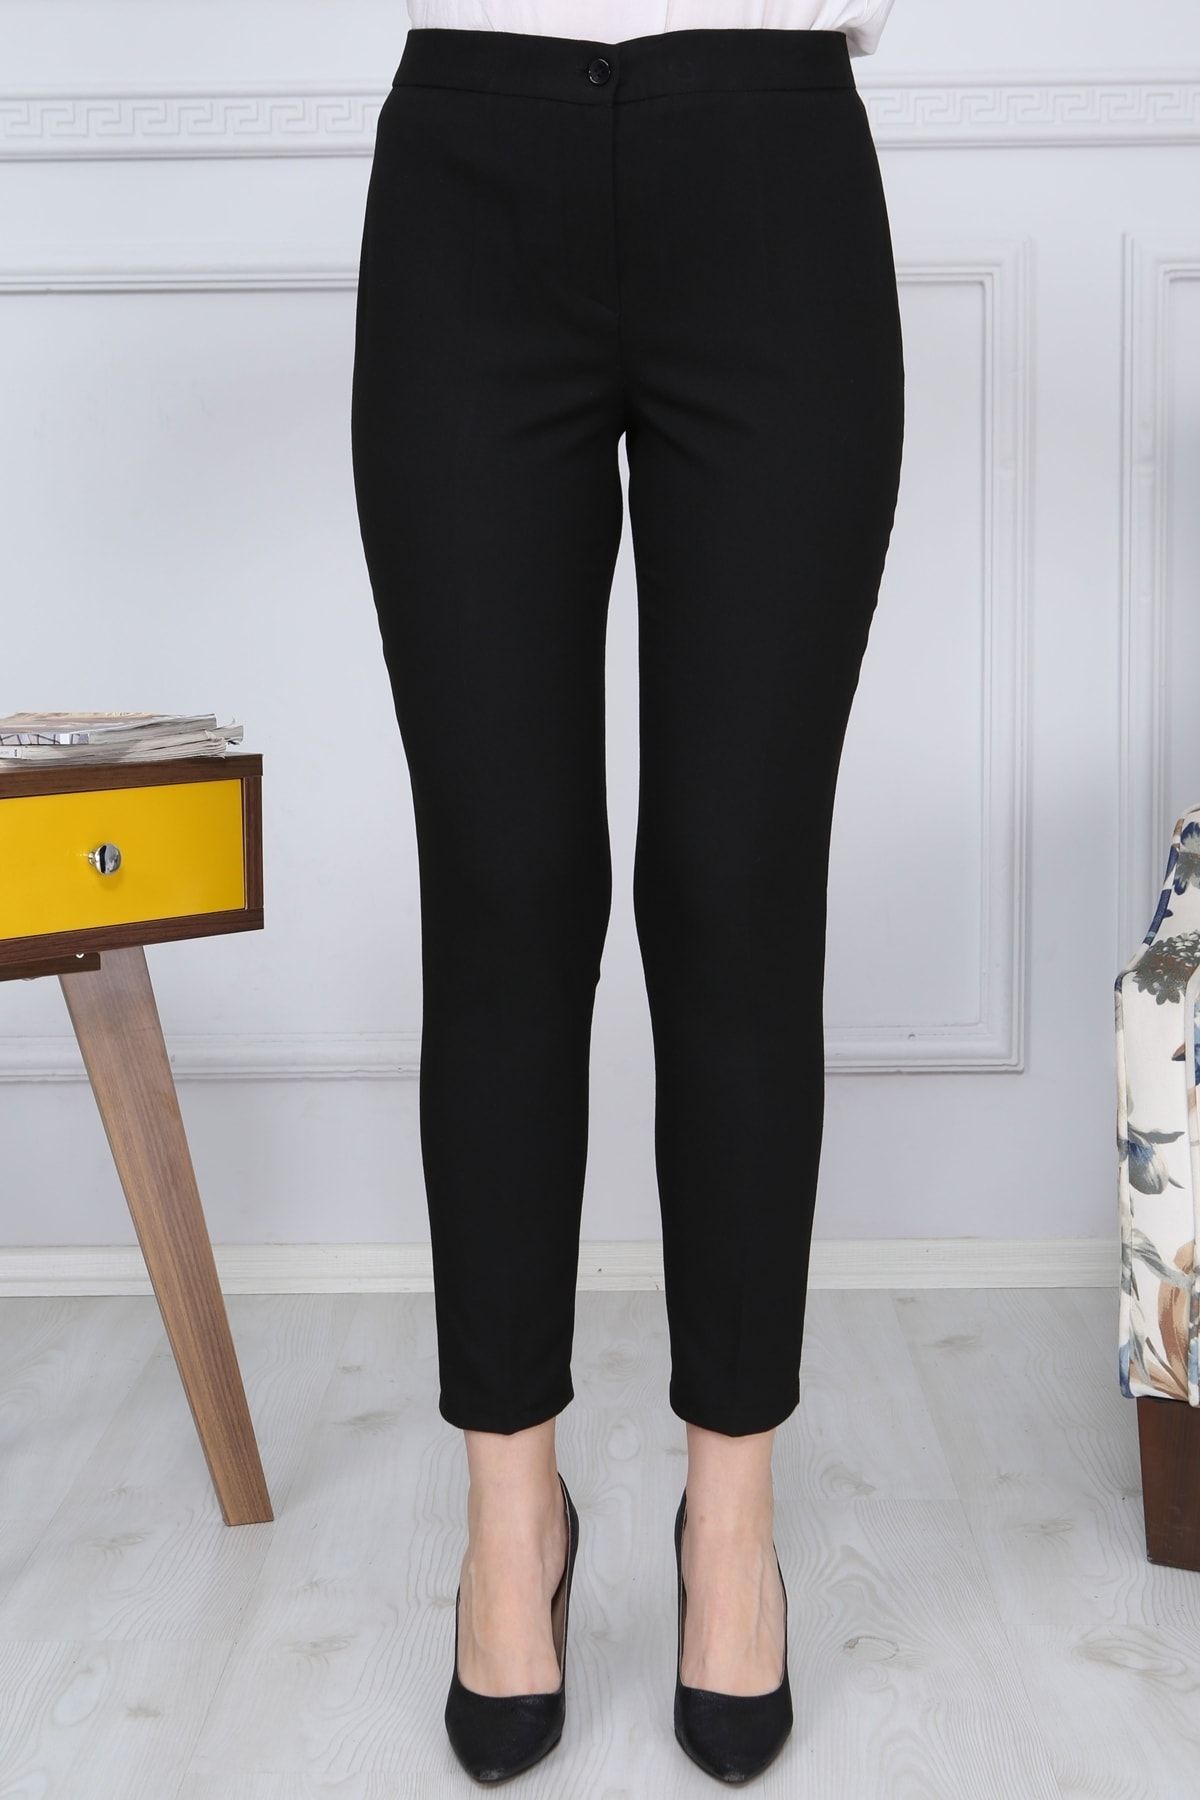 Gül Moda Siyah Kemerli Dar Paça Kumaş Pantolon Likralı Cepsiz G011